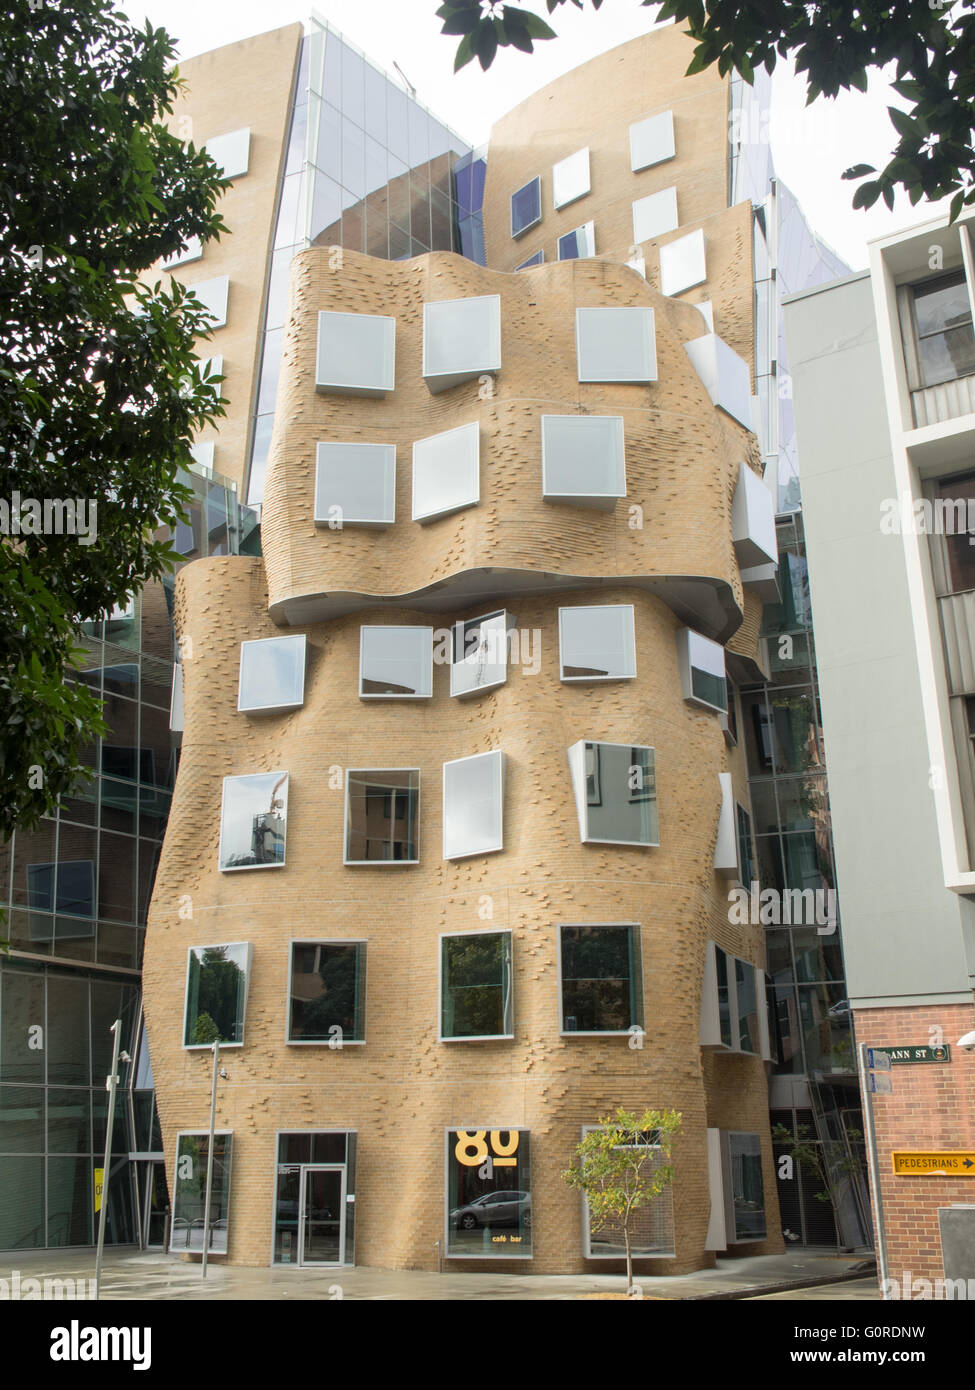 Dr Chau aile Chak Building, conçu par Frank Gehry. Banque D'Images